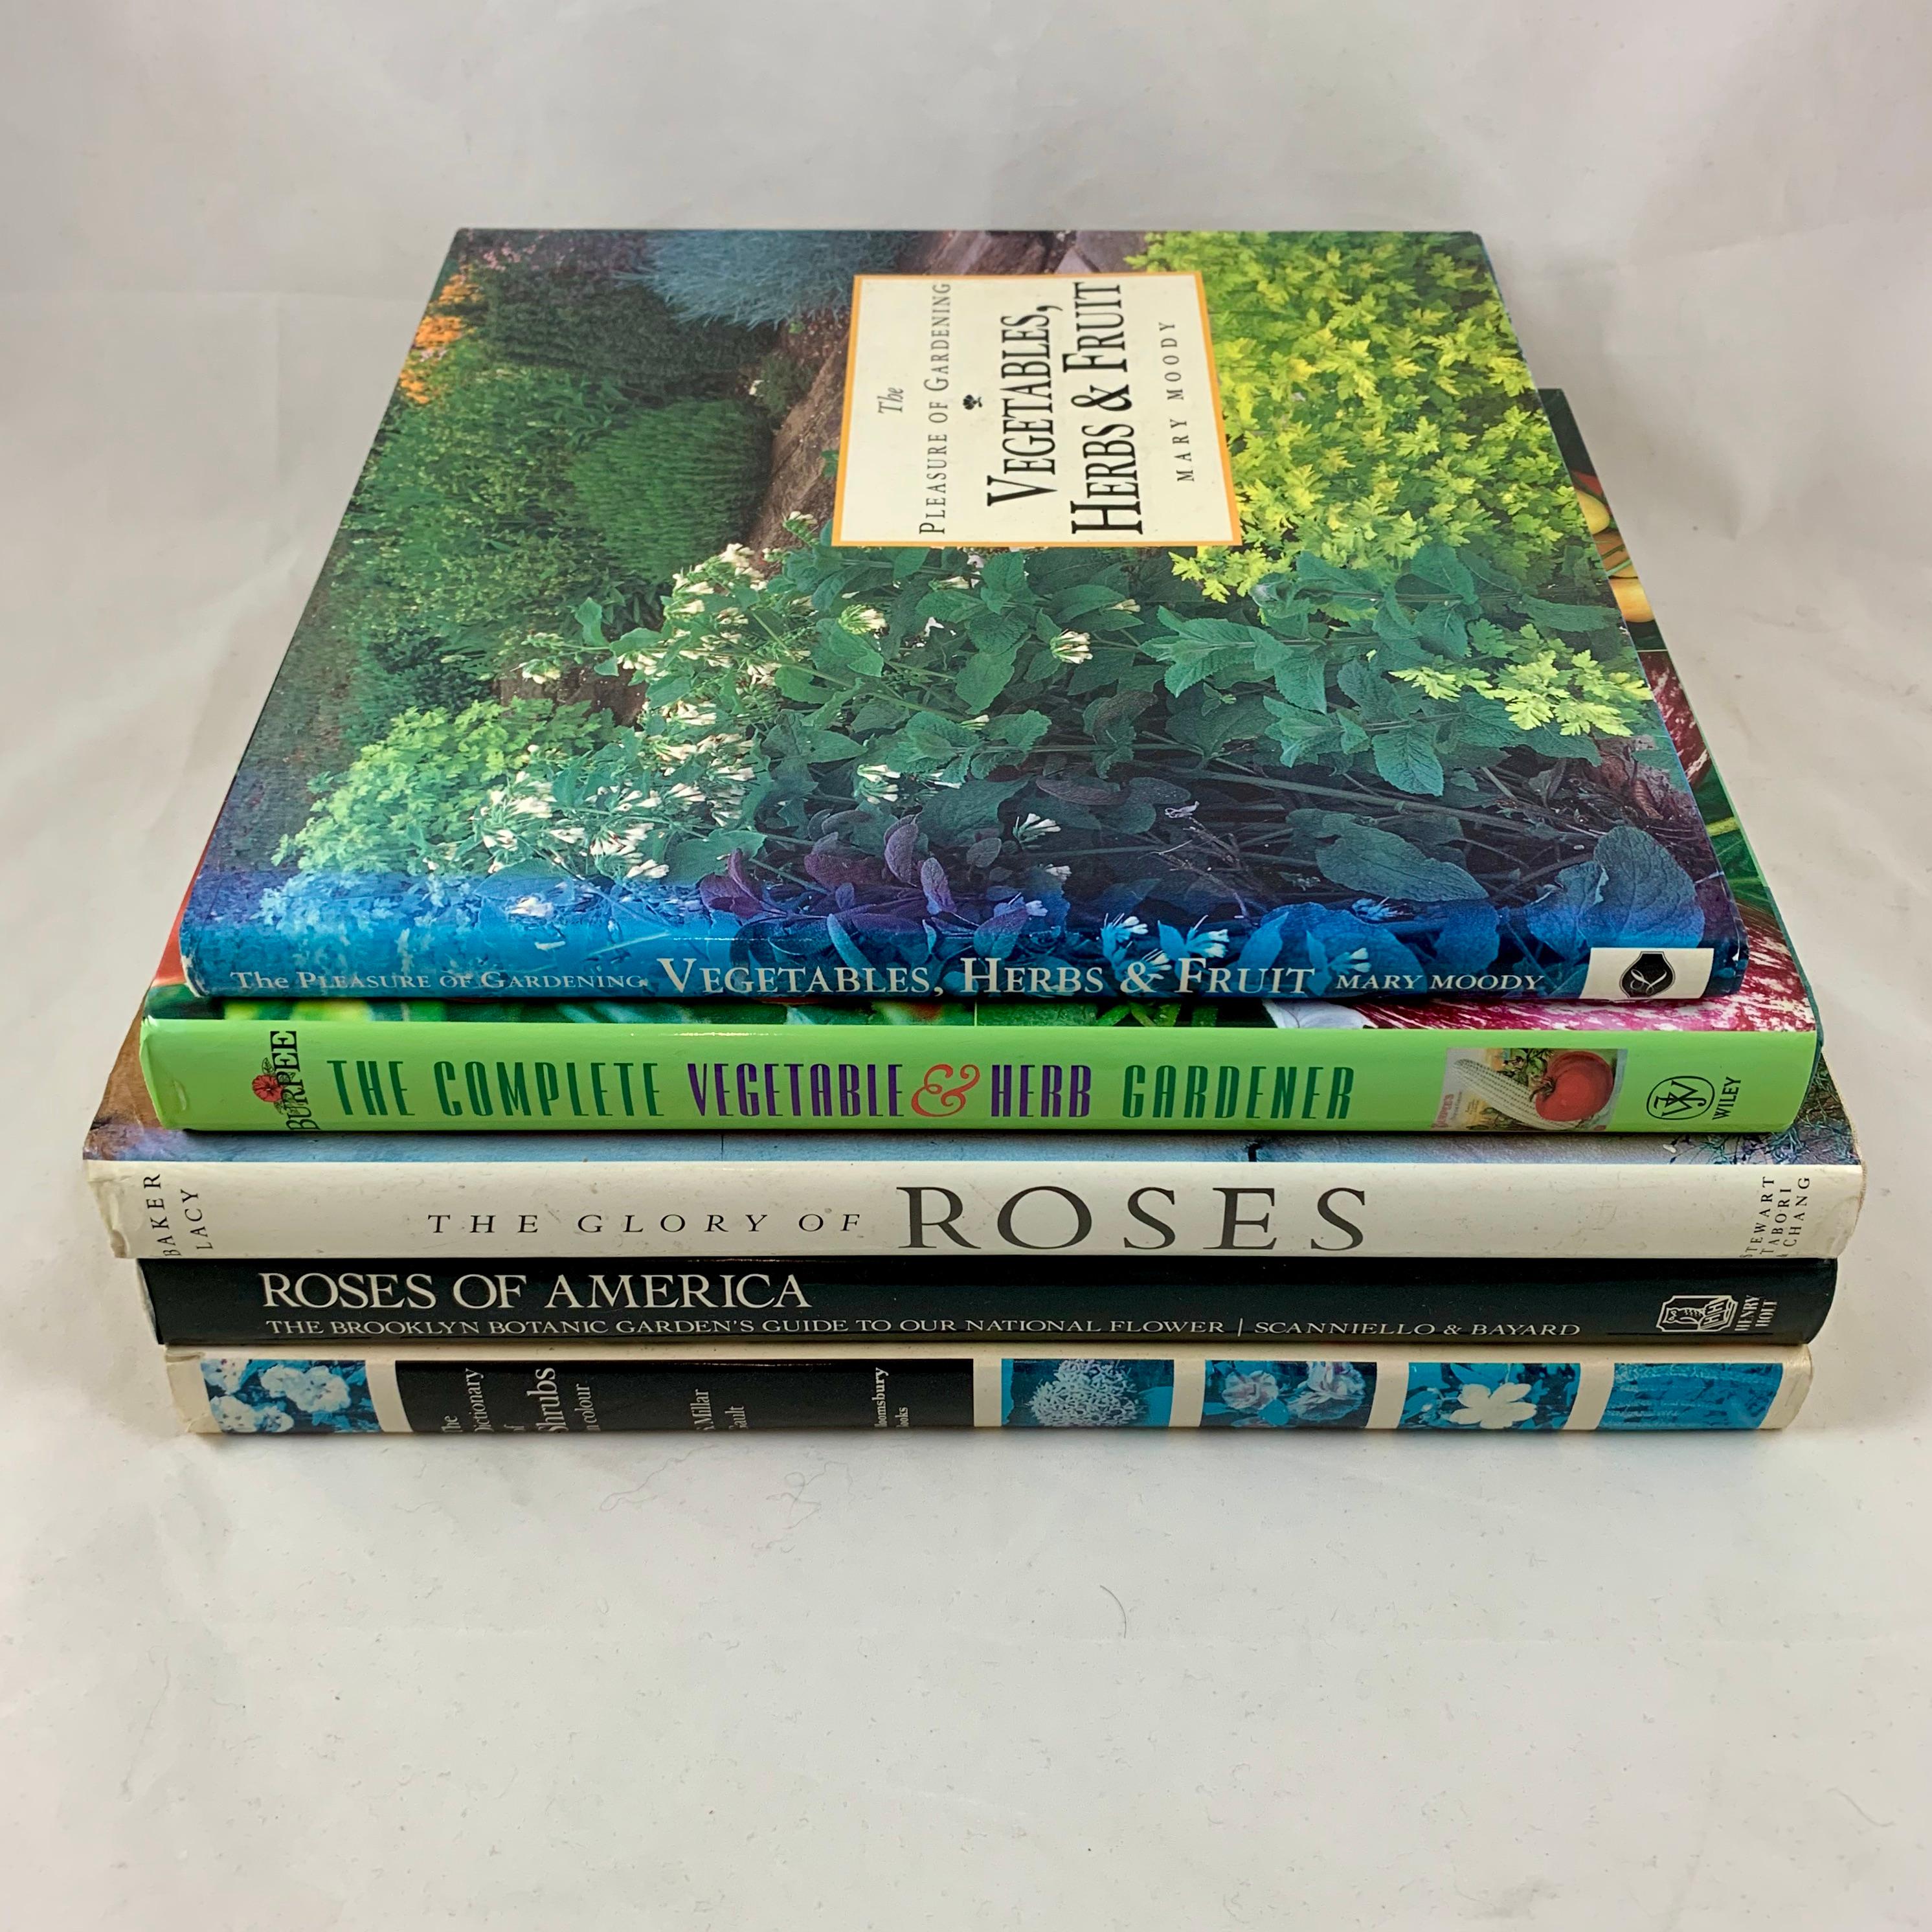 Eine Sammlung von fünf gebundenen Gartenbüchern, die sowohl für Anfänger als auch für fortgeschrittene Gärtner geeignet sind. Ein breites Themenspektrum von Rosen, Kräutern, Sträuchern, Gemüse und Obstbäumen wird abgedeckt. Alle fünf Bücher sind